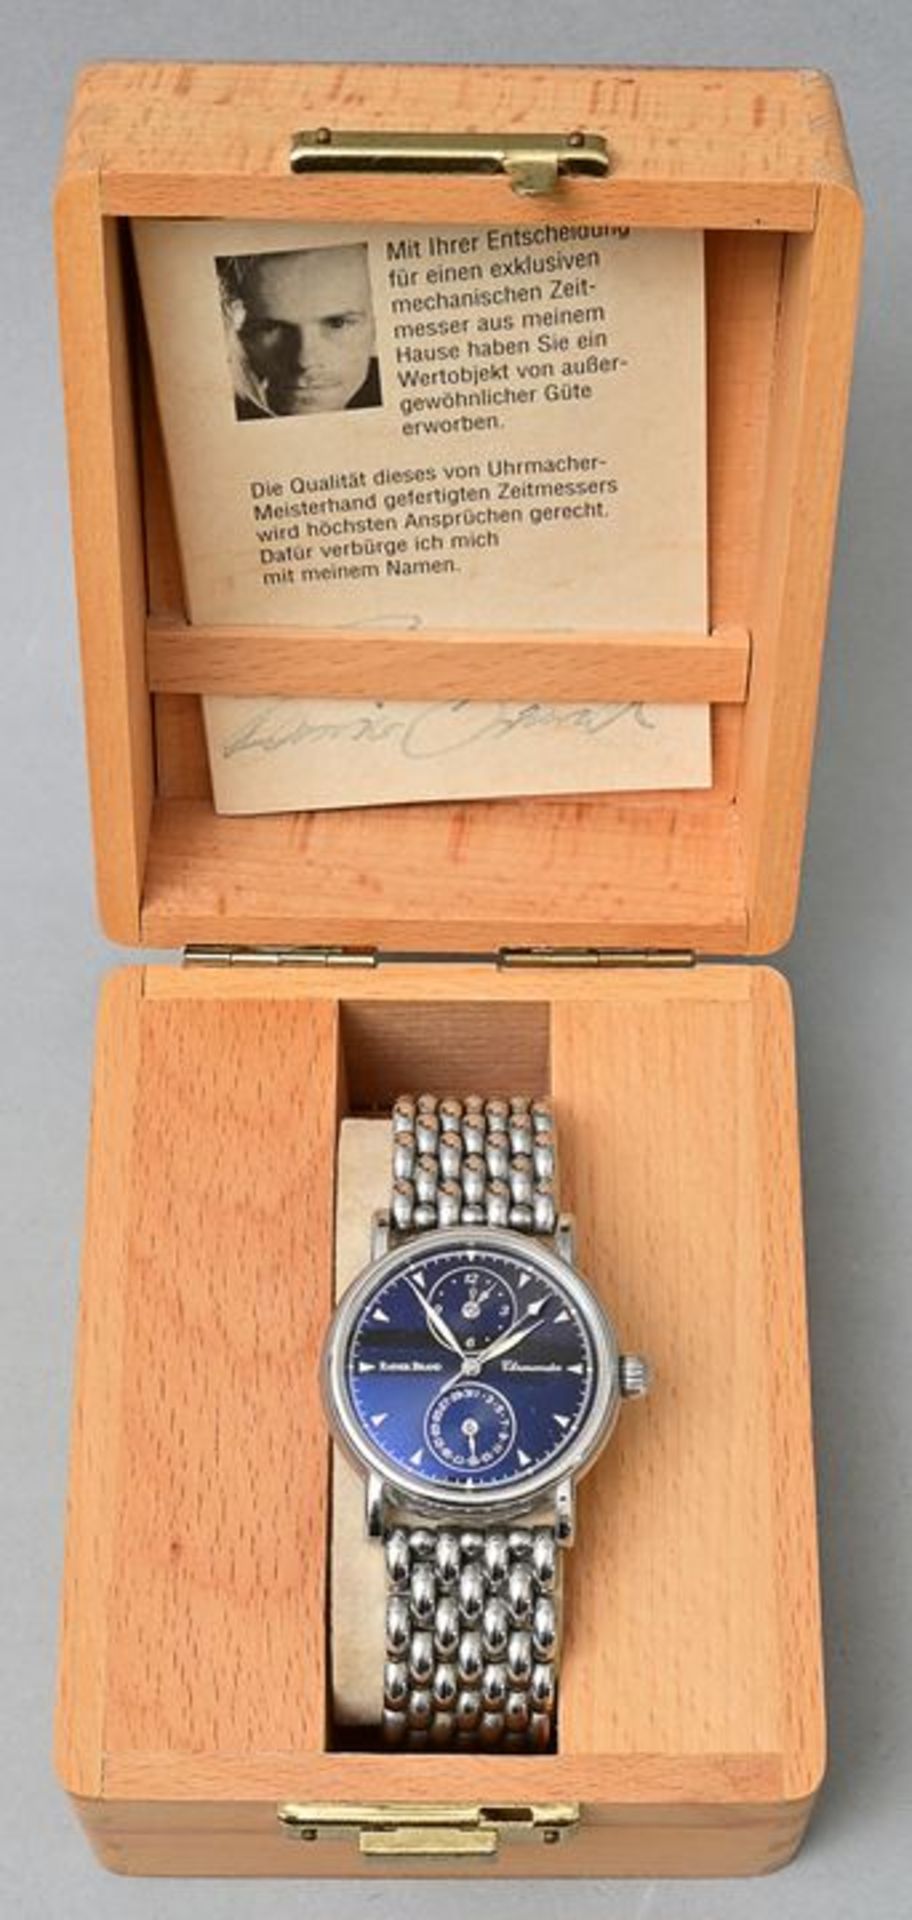 HerrenarmbanduhrRainer Brand, Edelstahl, ''Chronometer'', Originalbox und Papiere - Image 5 of 5